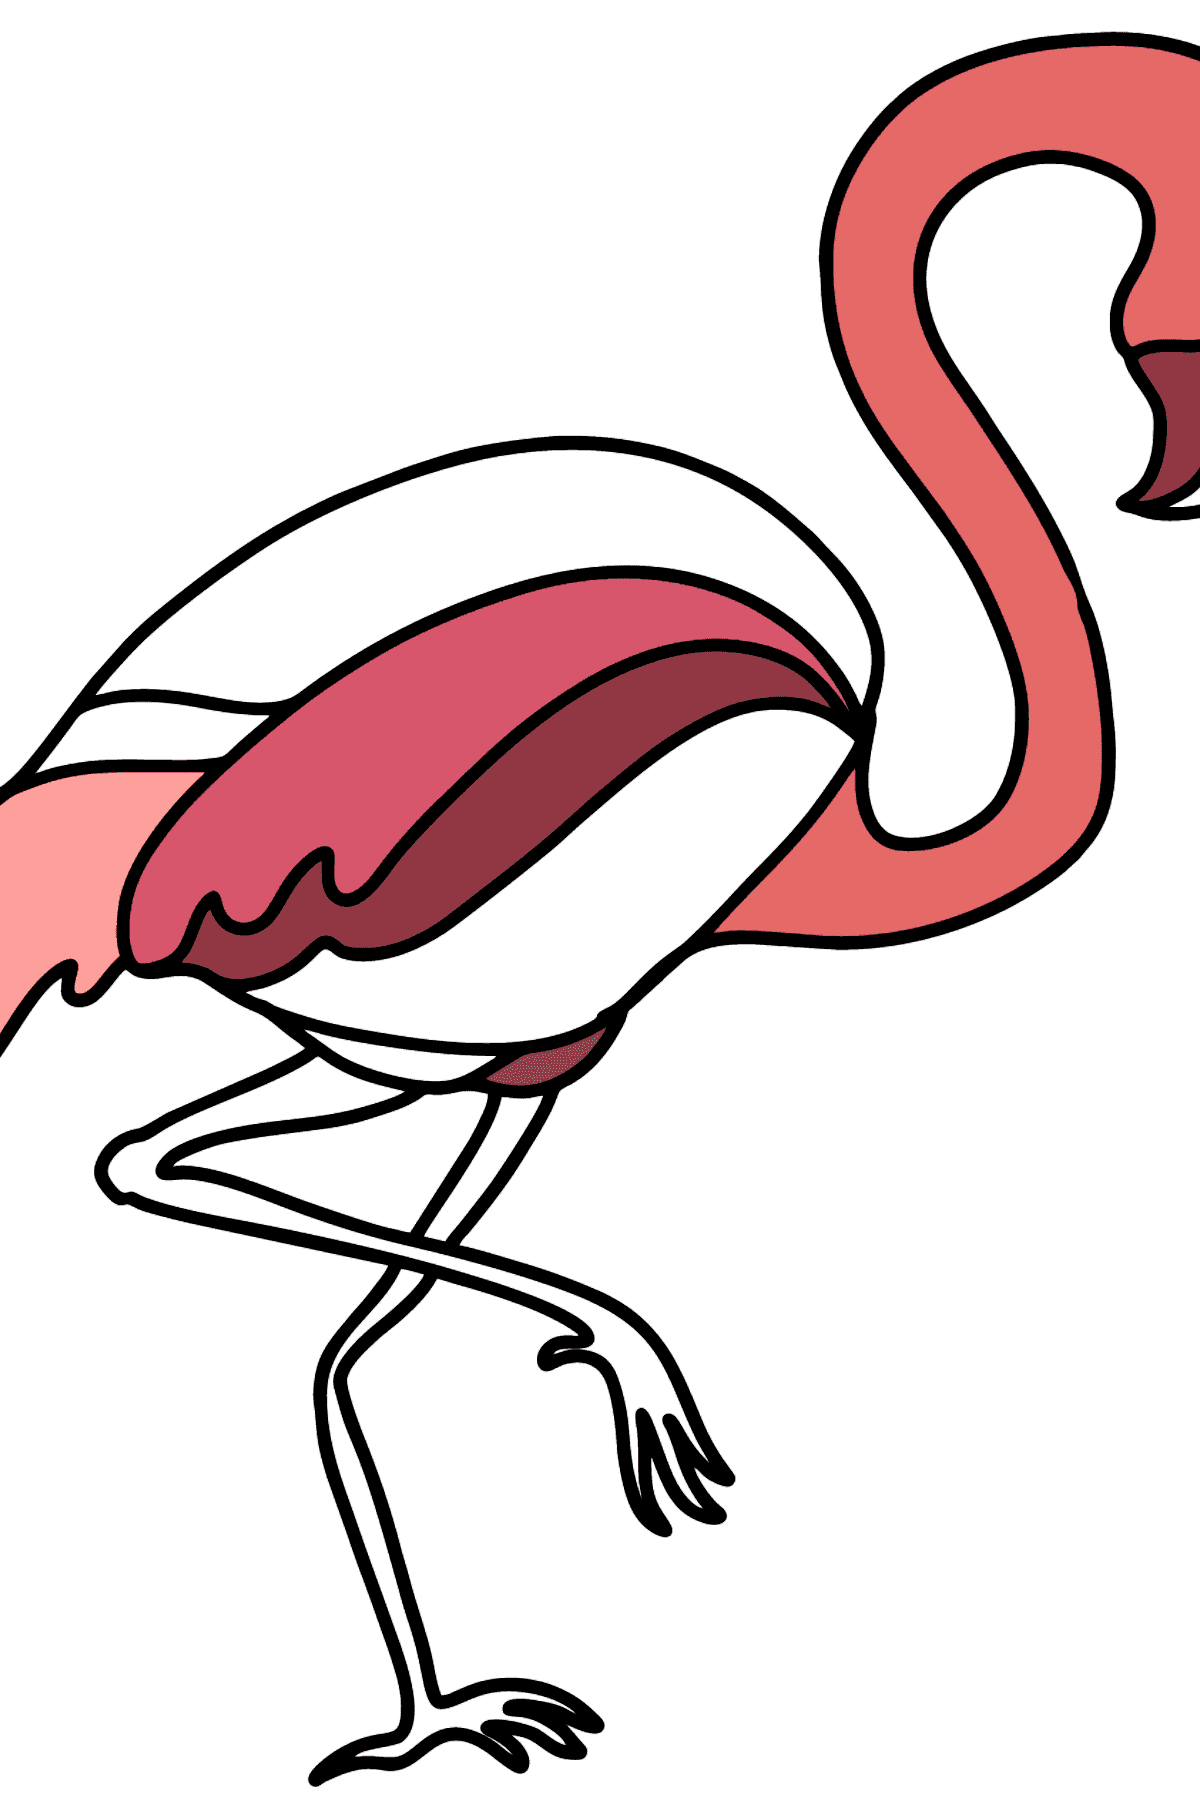 Flamingo kleurplaat - kleurplaten voor kinderen